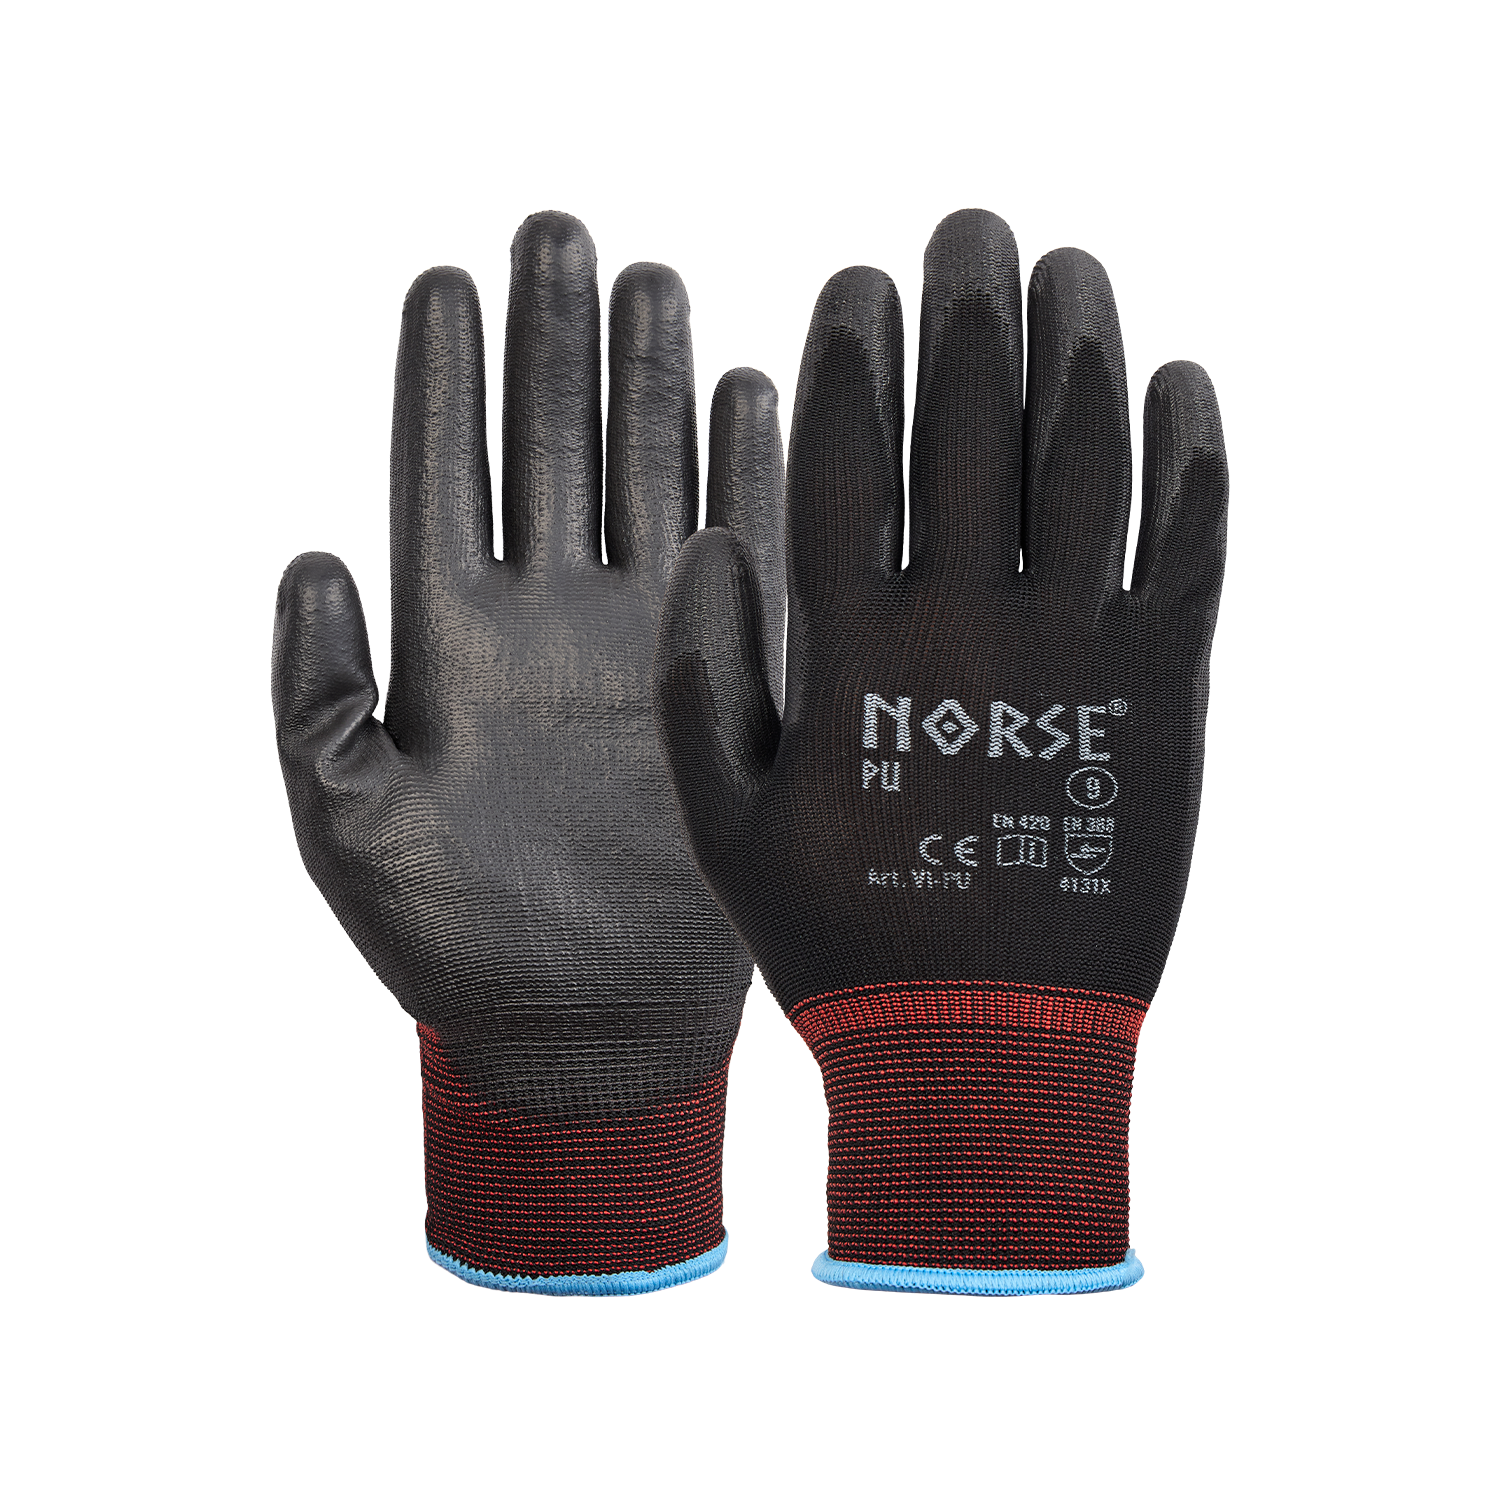 NORSE PU Black assembly gloves size 8